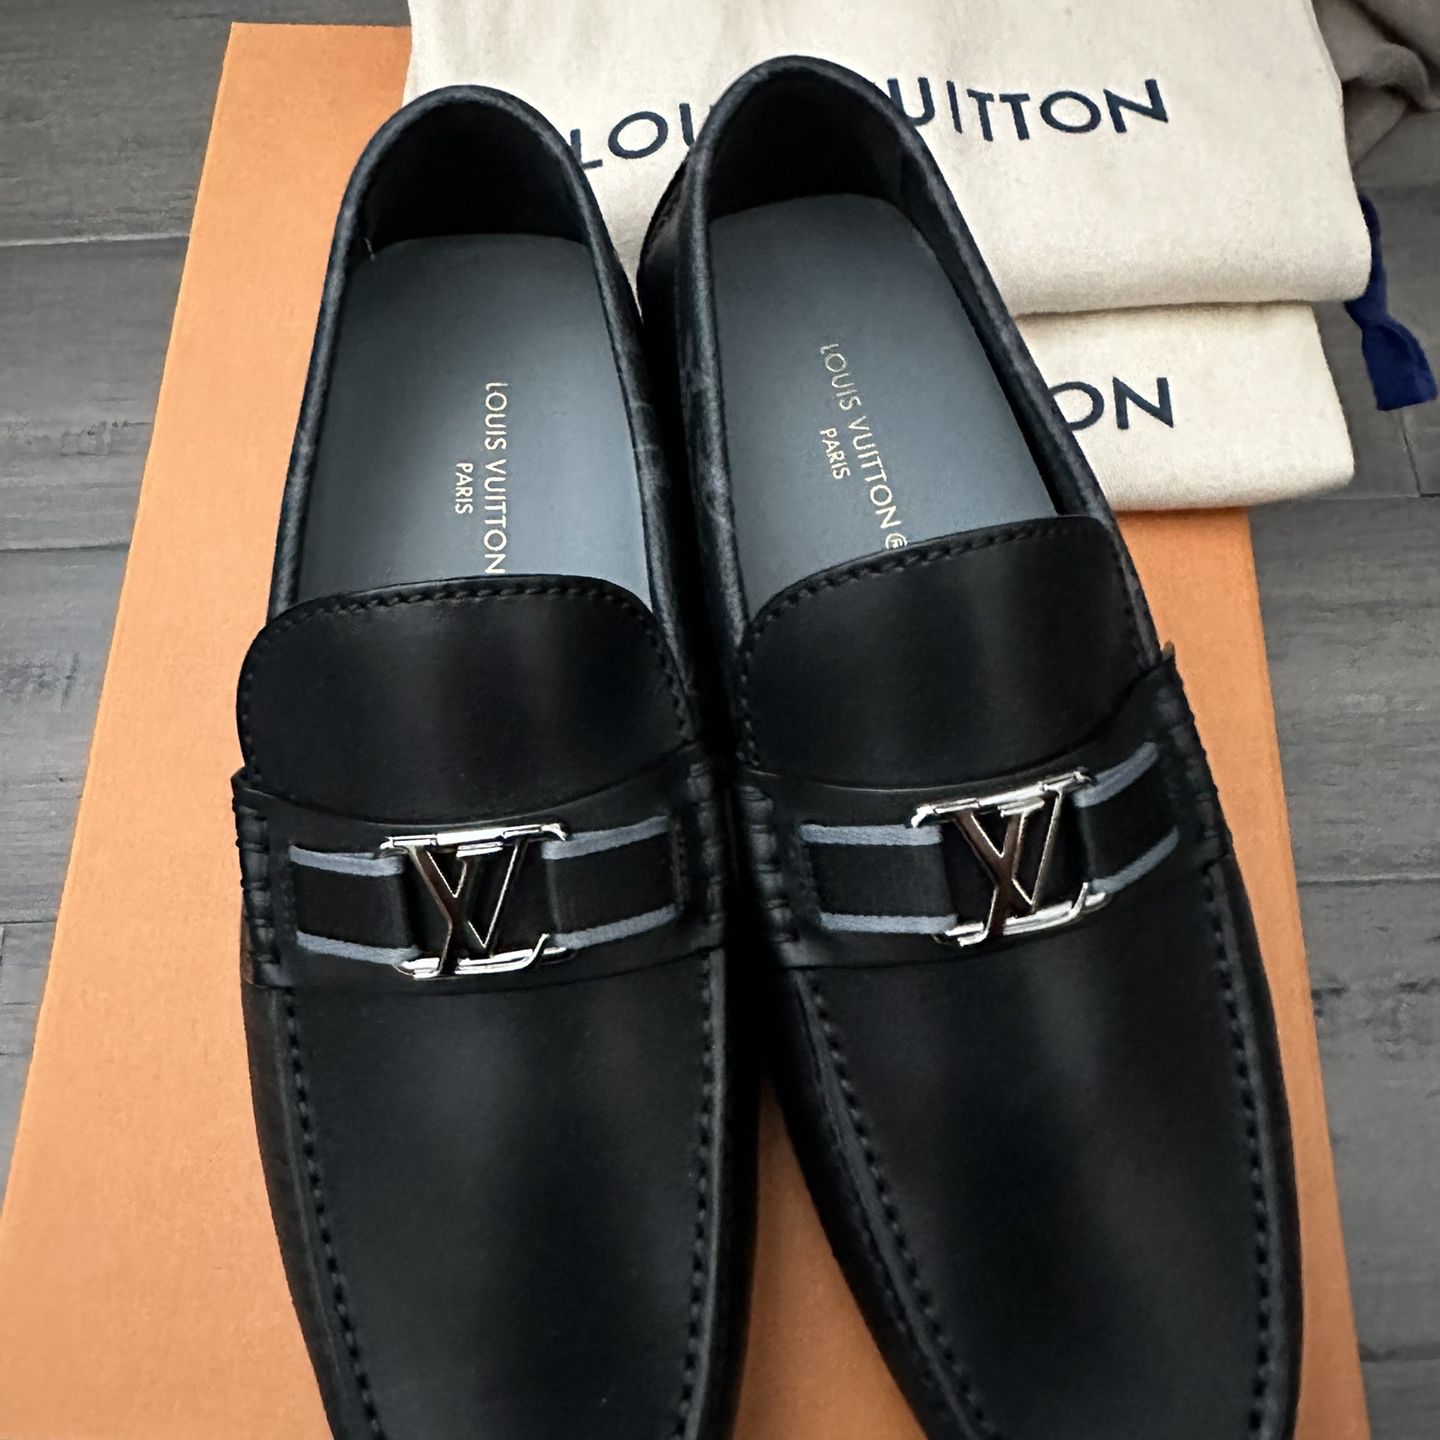 Louis Vuitton Men's Driving Moccasins Shoes for sale